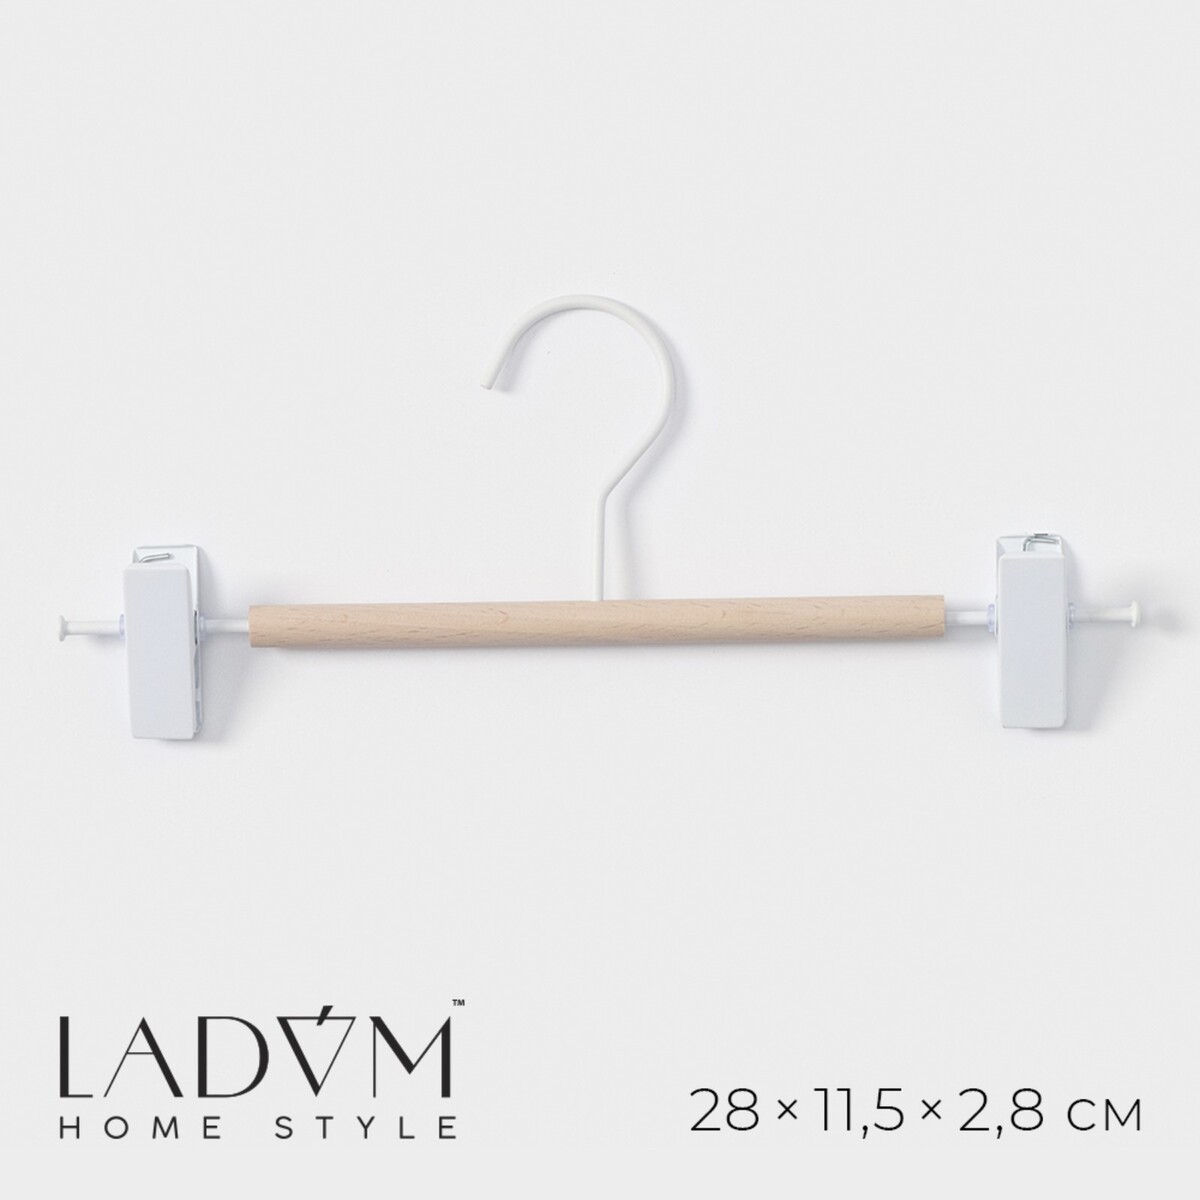 Вешалка для брюк и юбок ladо́m laconique, 28×11,5×2,8 см, цвет белый вешалка органайзер для ремней и шарфов многоуровневая ladо́m laconique 11 3×24×1 1 см белый